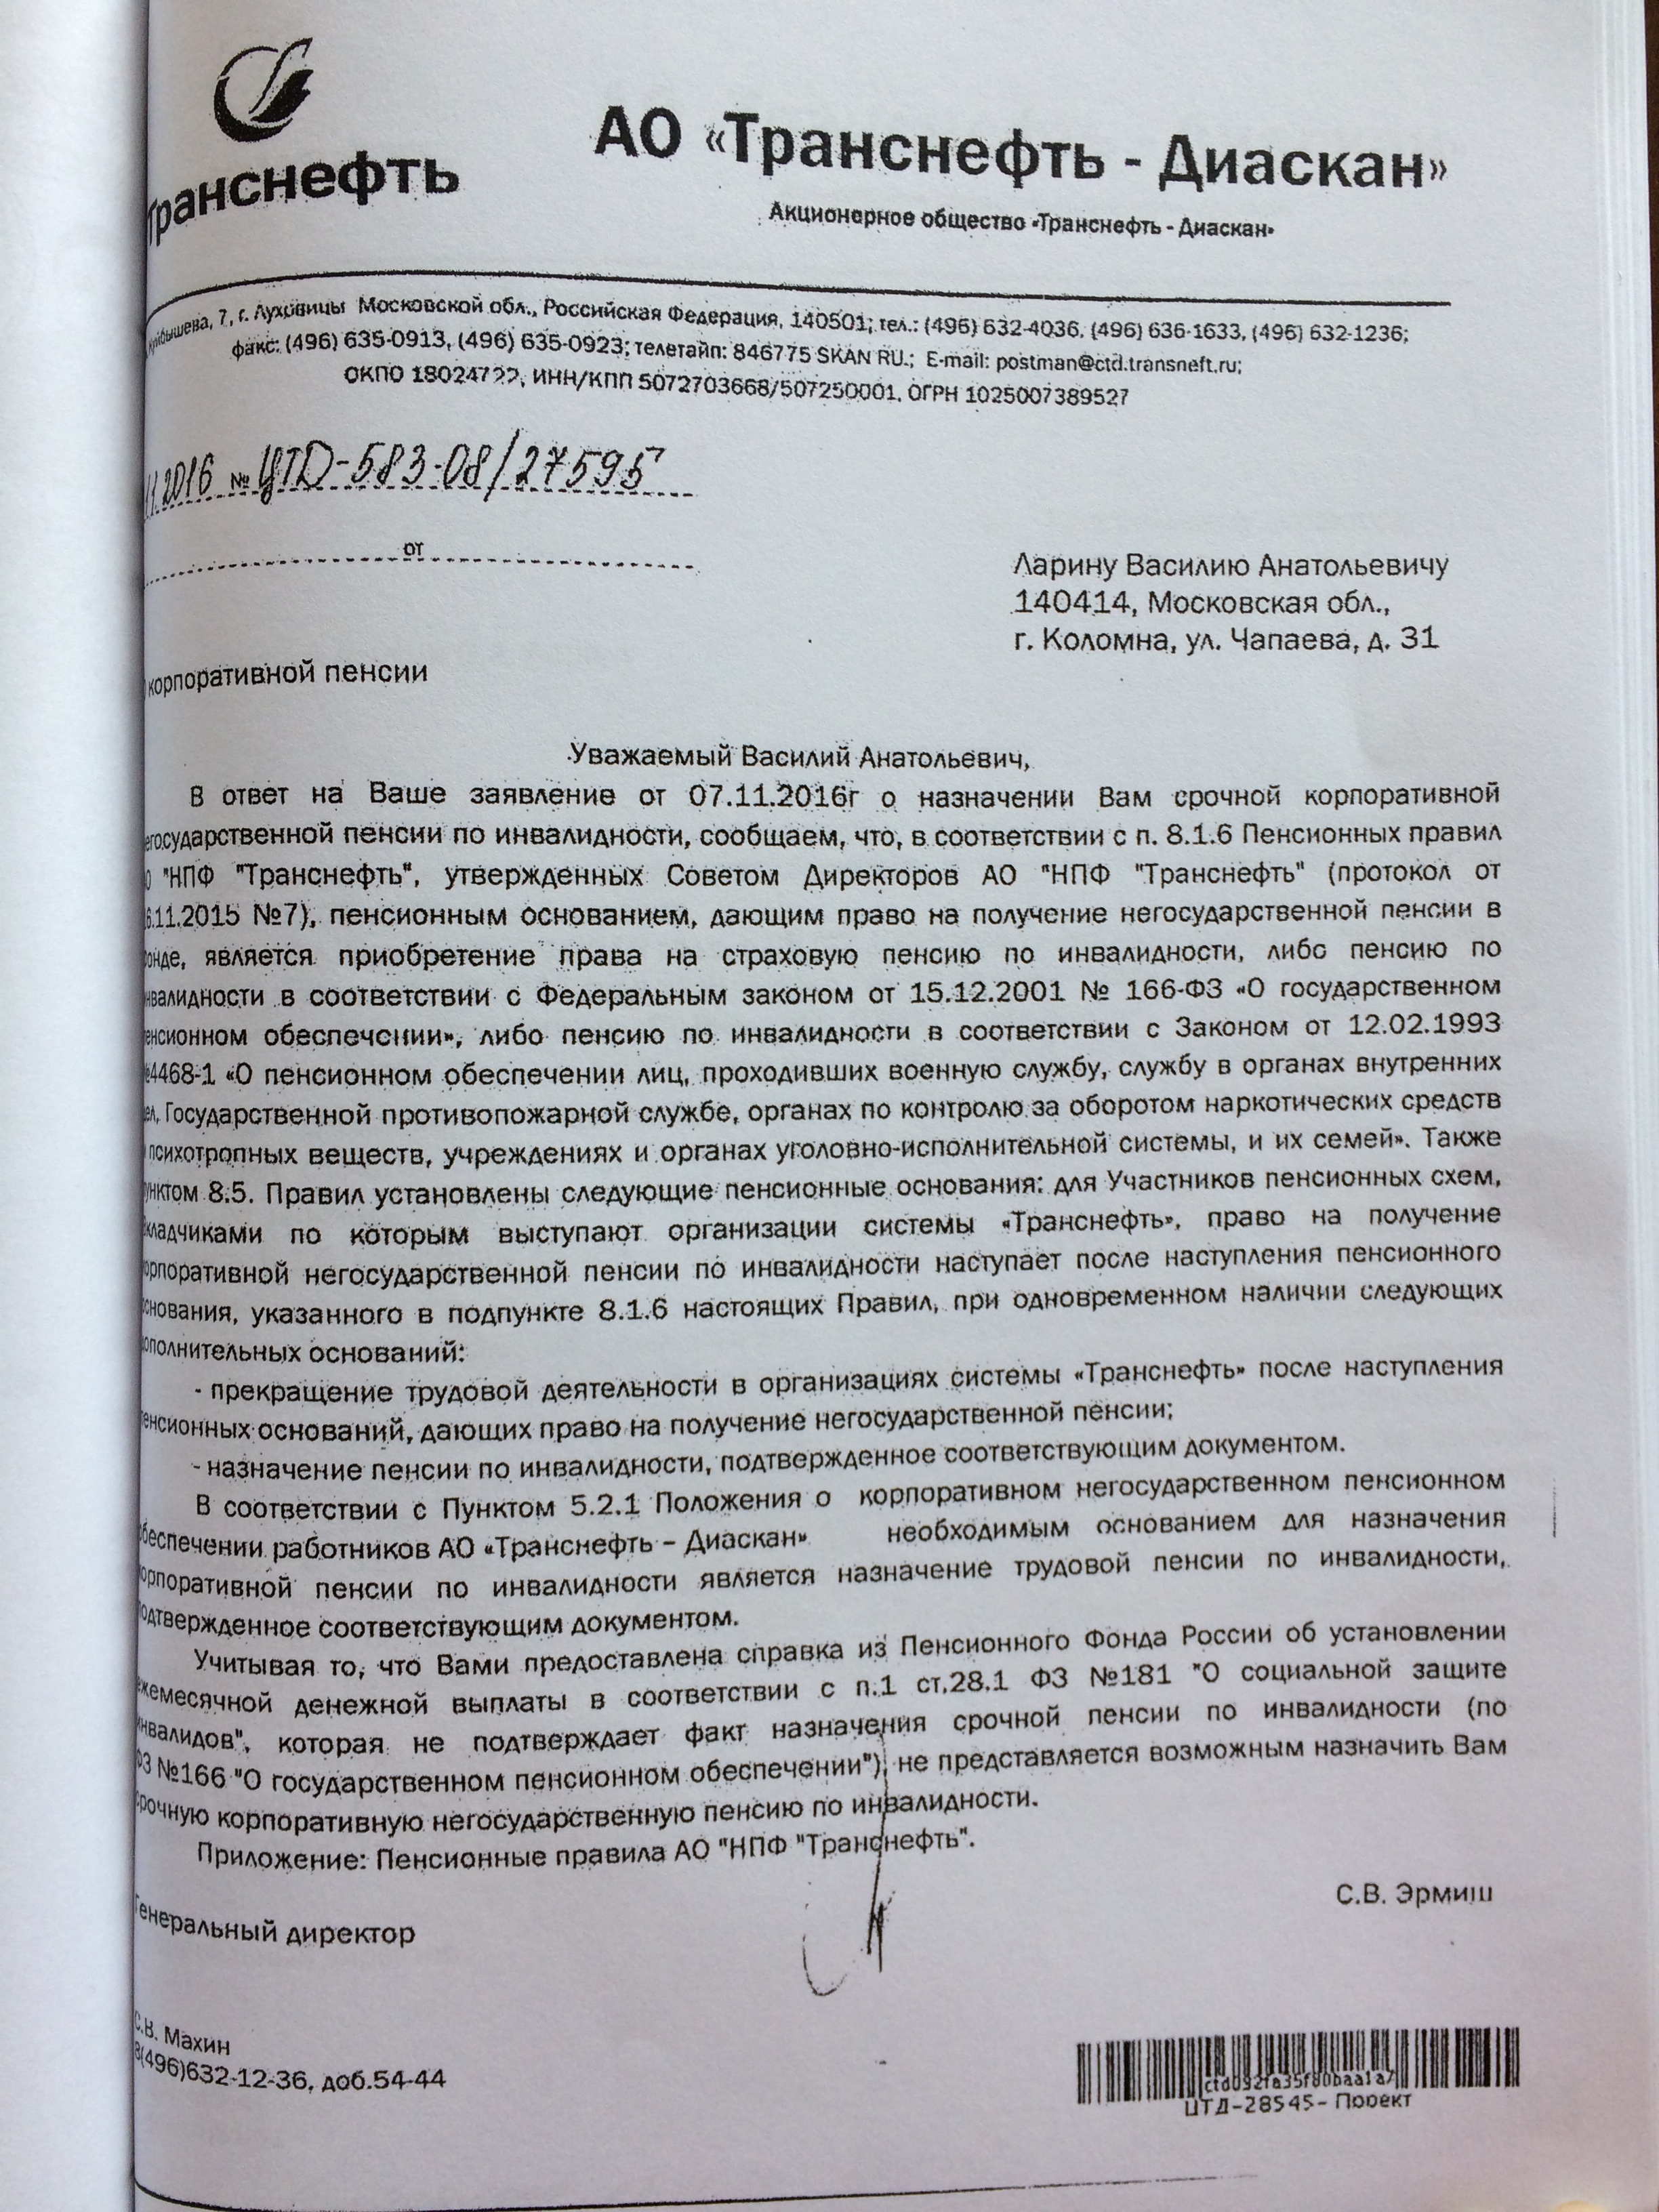 Фото документов проверки Луховицкой городской прокуратурой - 46 (5)